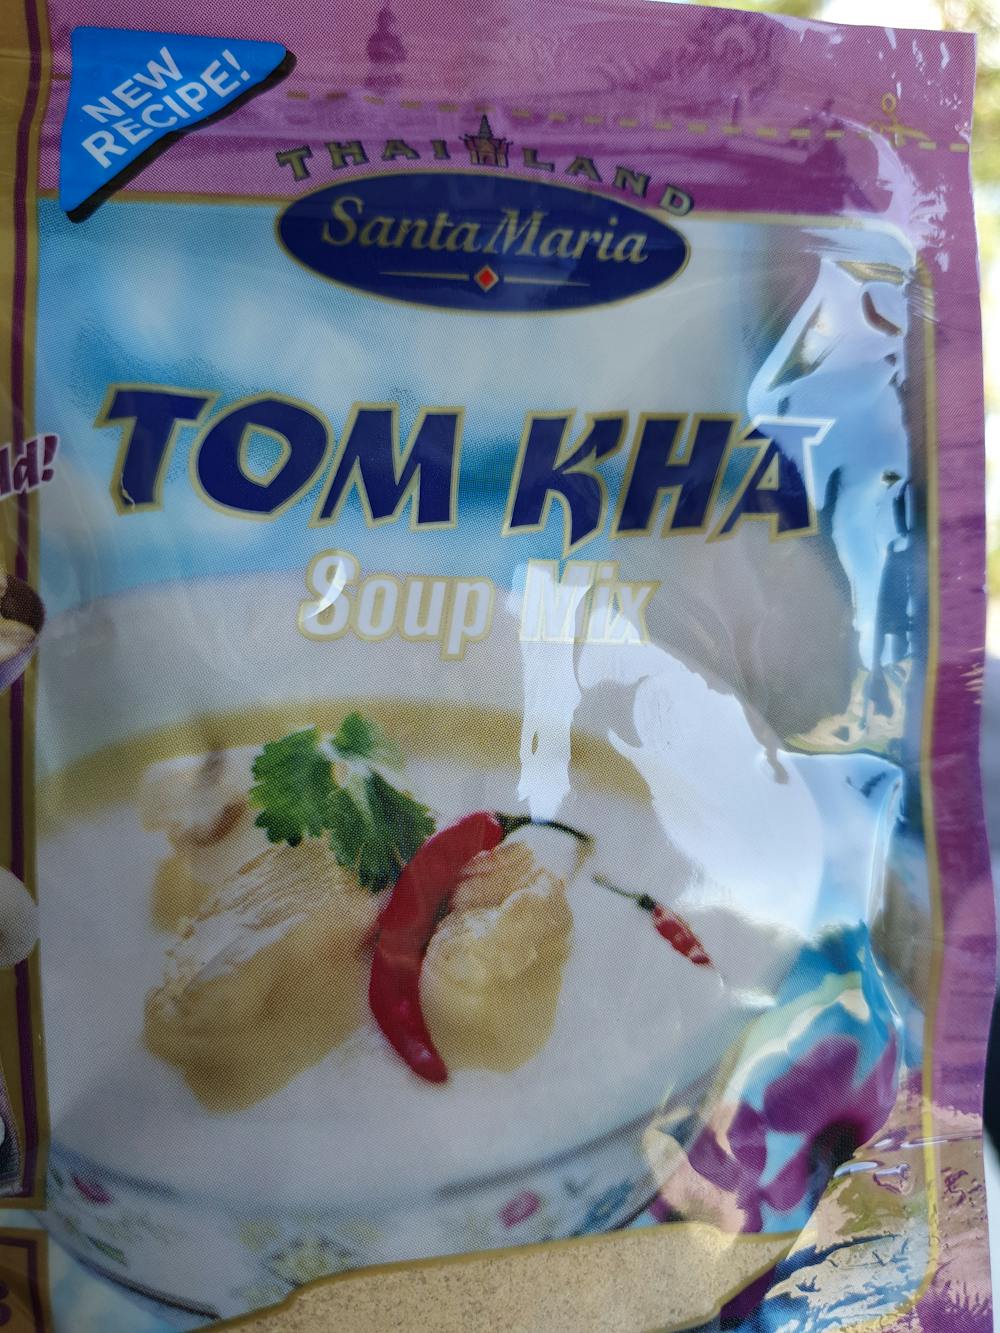 Tom kha soup mix, Santa Maria